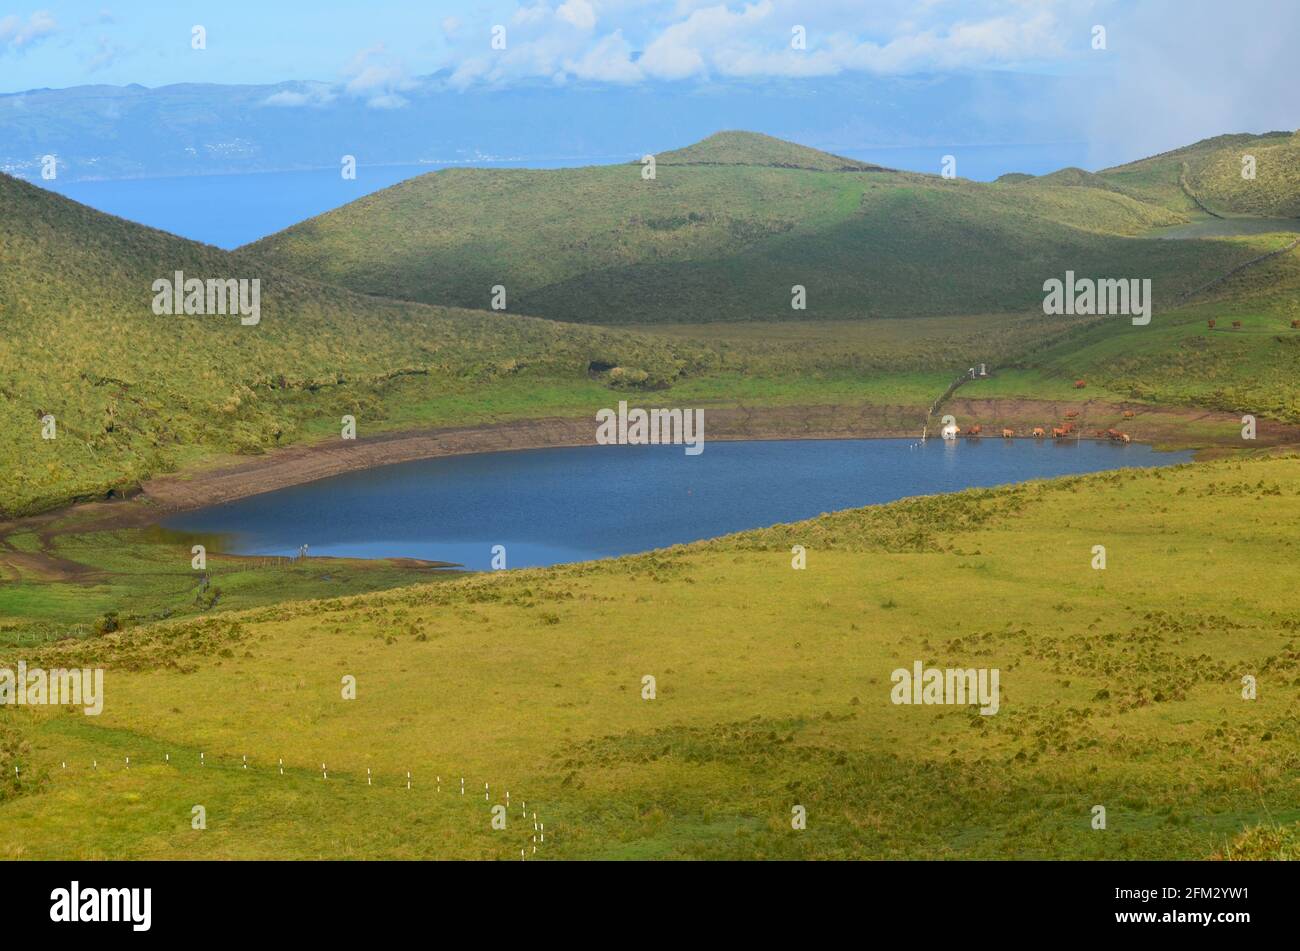 Lagoa do Peixinho in the highlands of Pico island, Azores archipelago, Portugal Stock Photo